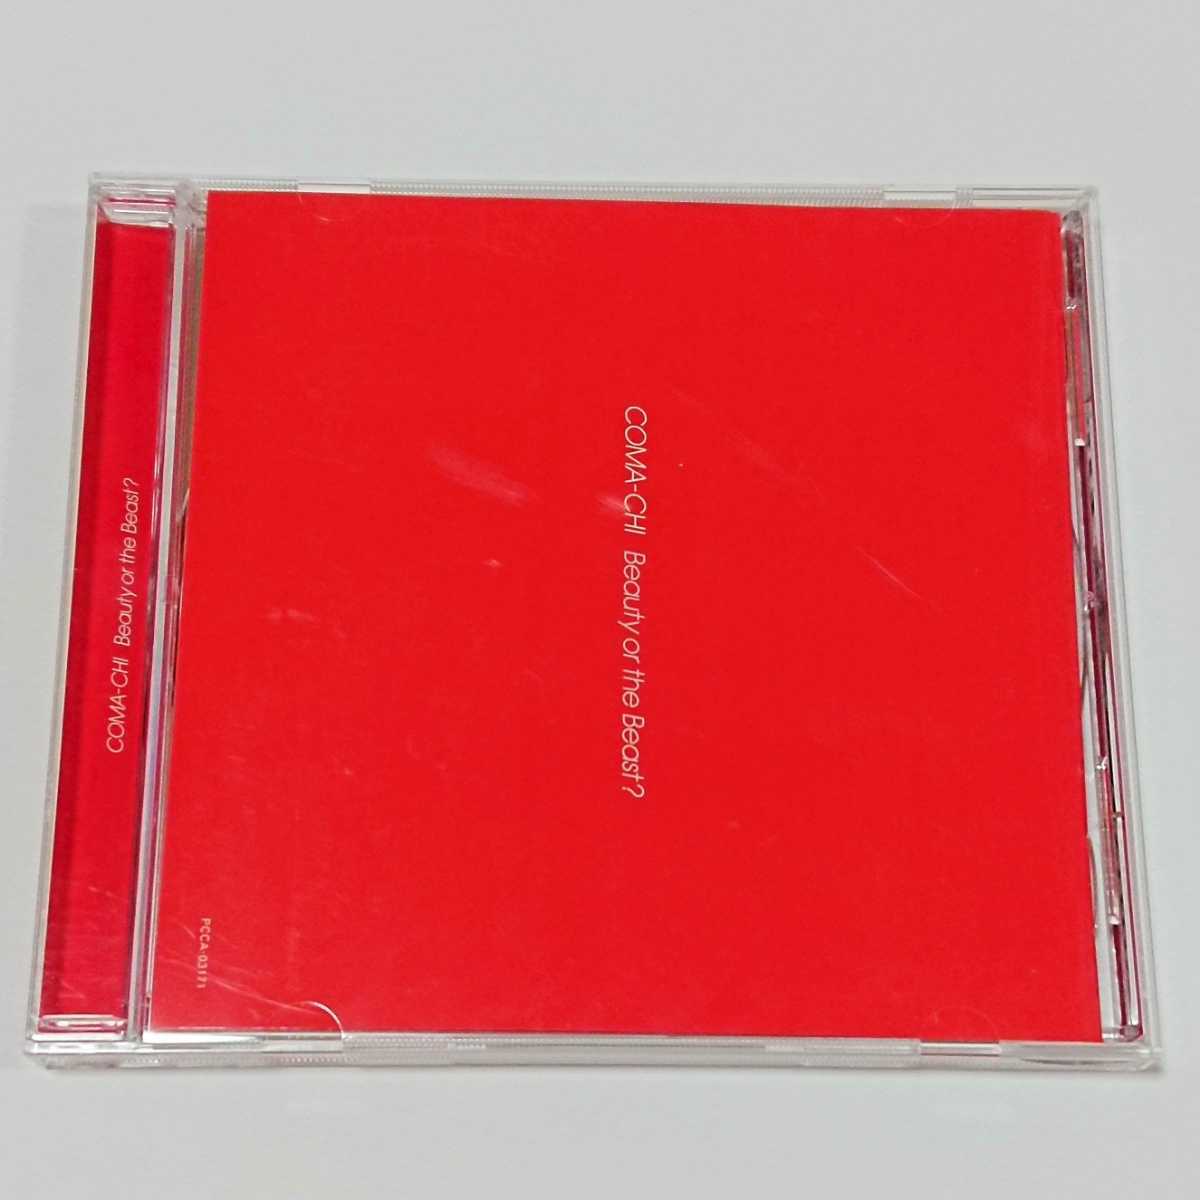 【美品】COMA-CHI Beauty or the Beast? アルバム 音楽 ミュージック Music CD Compact Disc の画像2